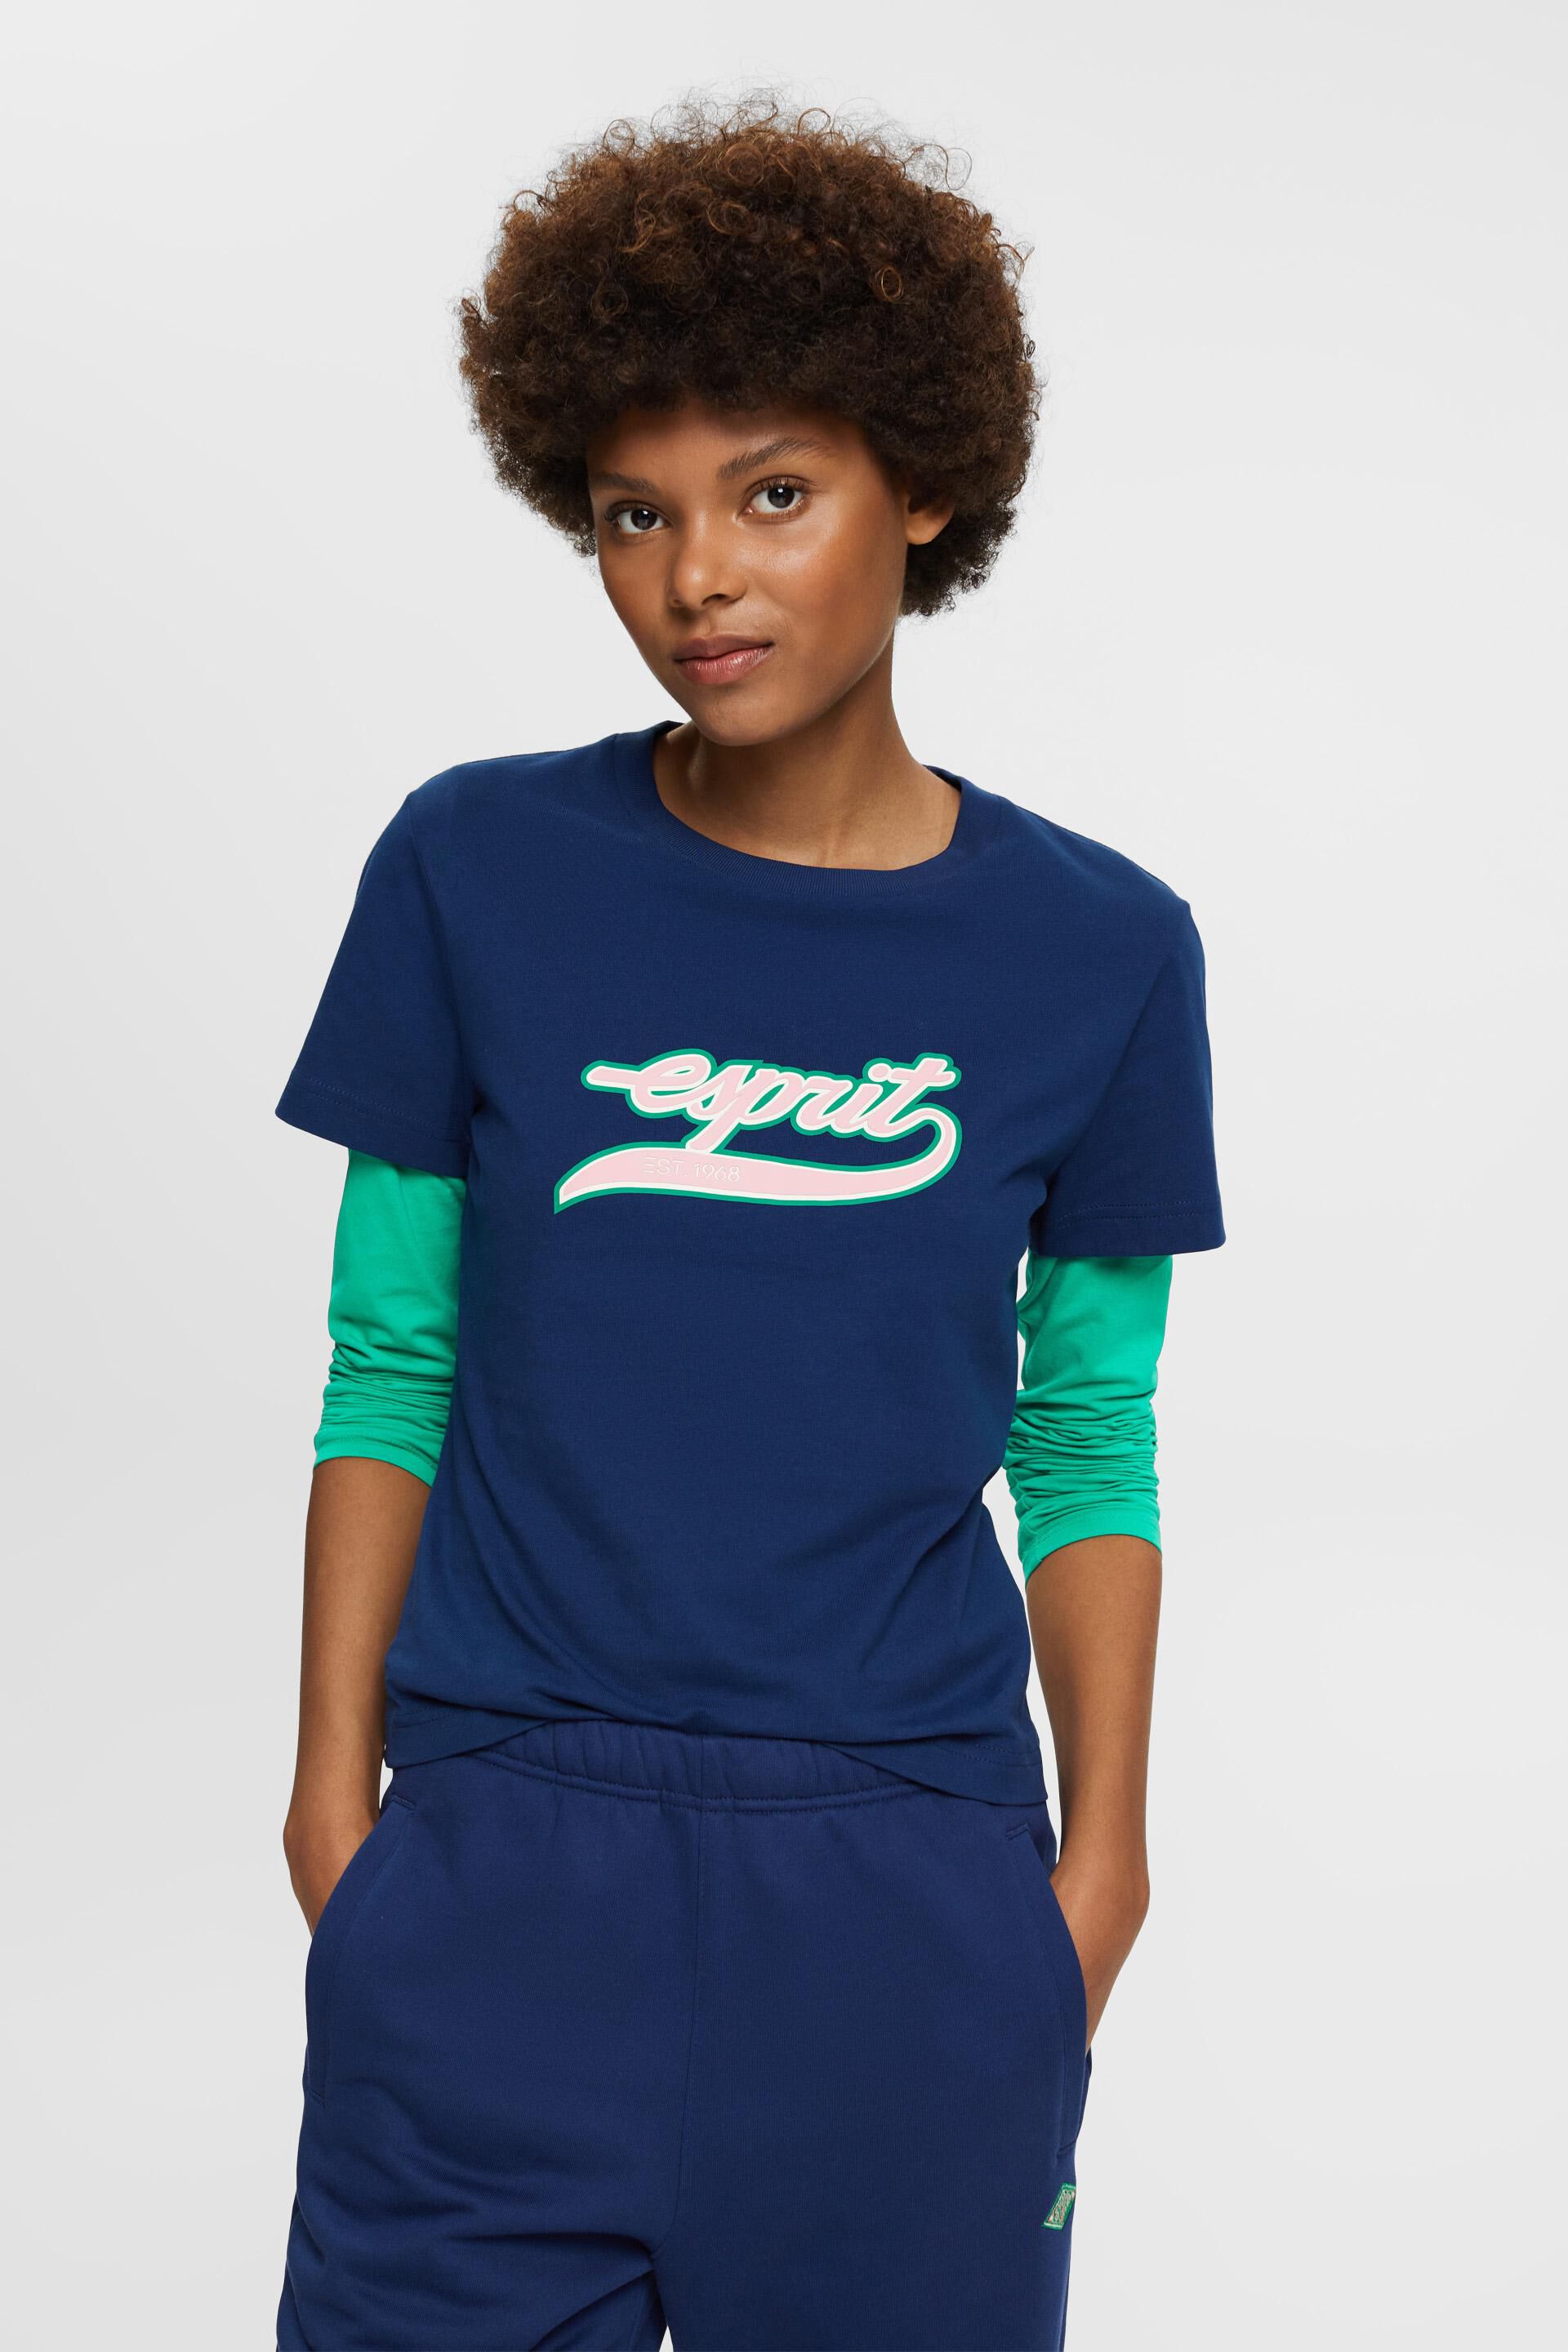 Esprit Damen Baumwoll-T-Shirt mit aufgedrucktem Logo